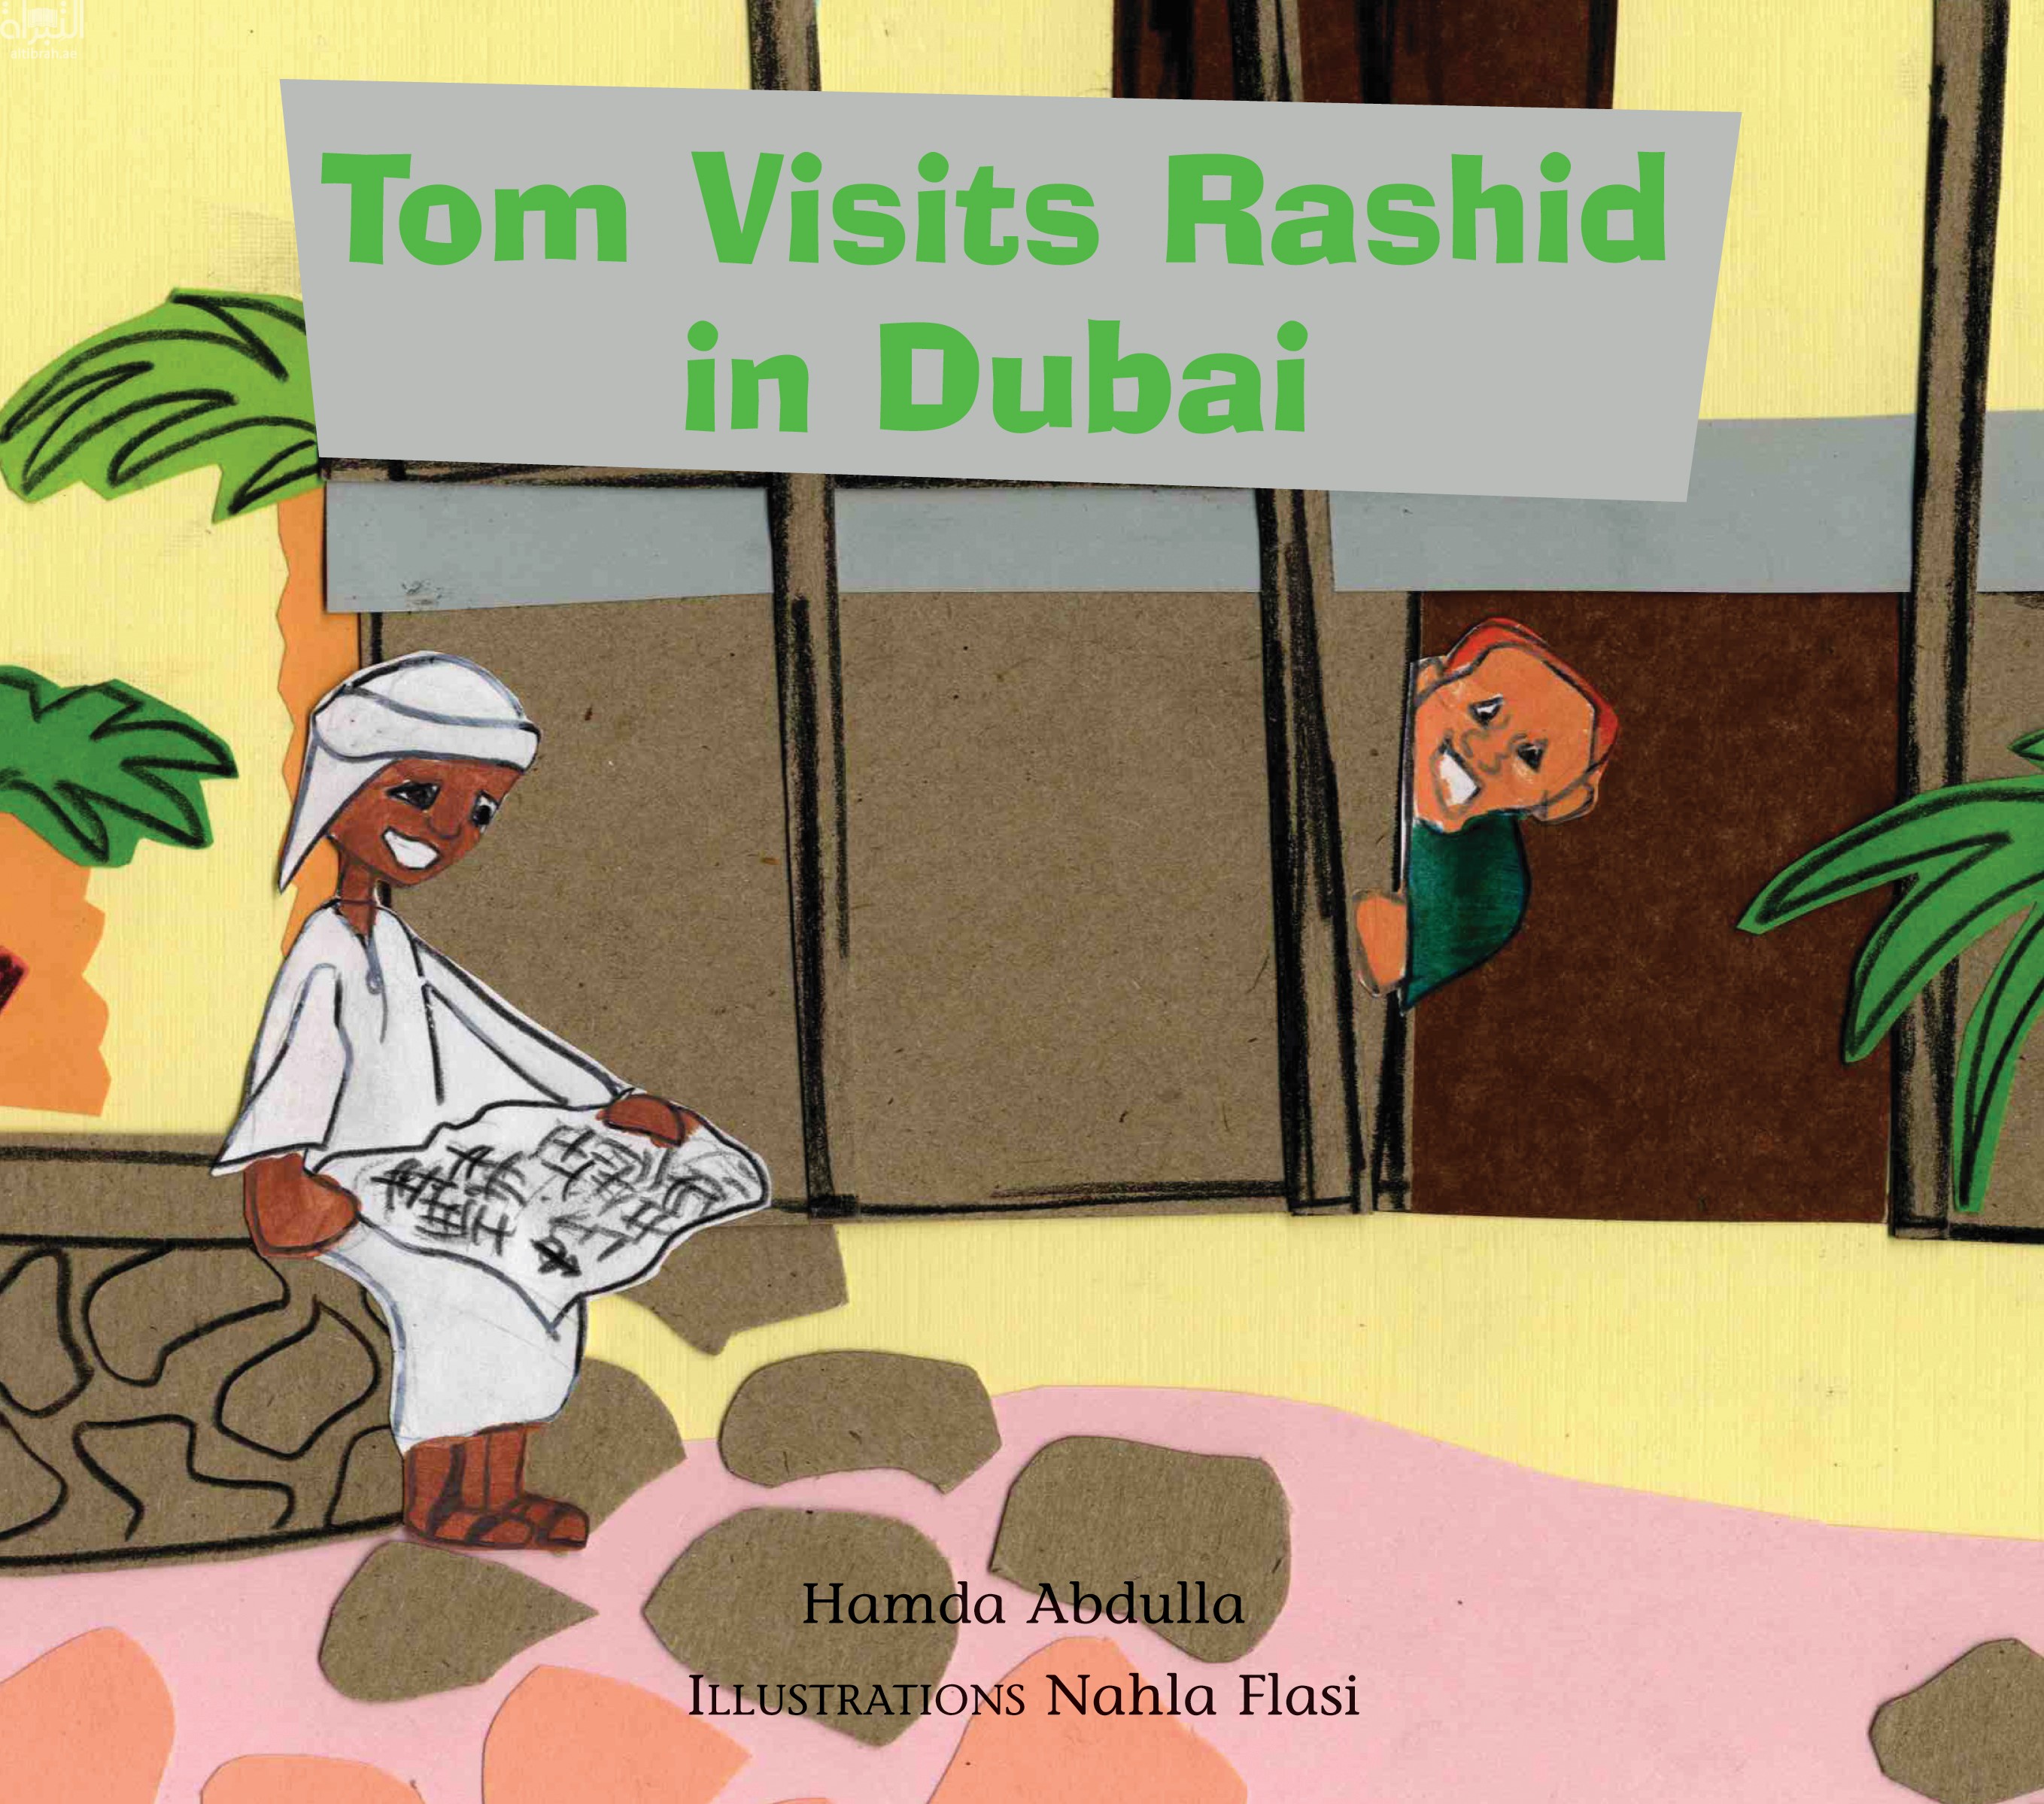 توم يزور راشداً في دبي Tom Visits Rashid in Dubai